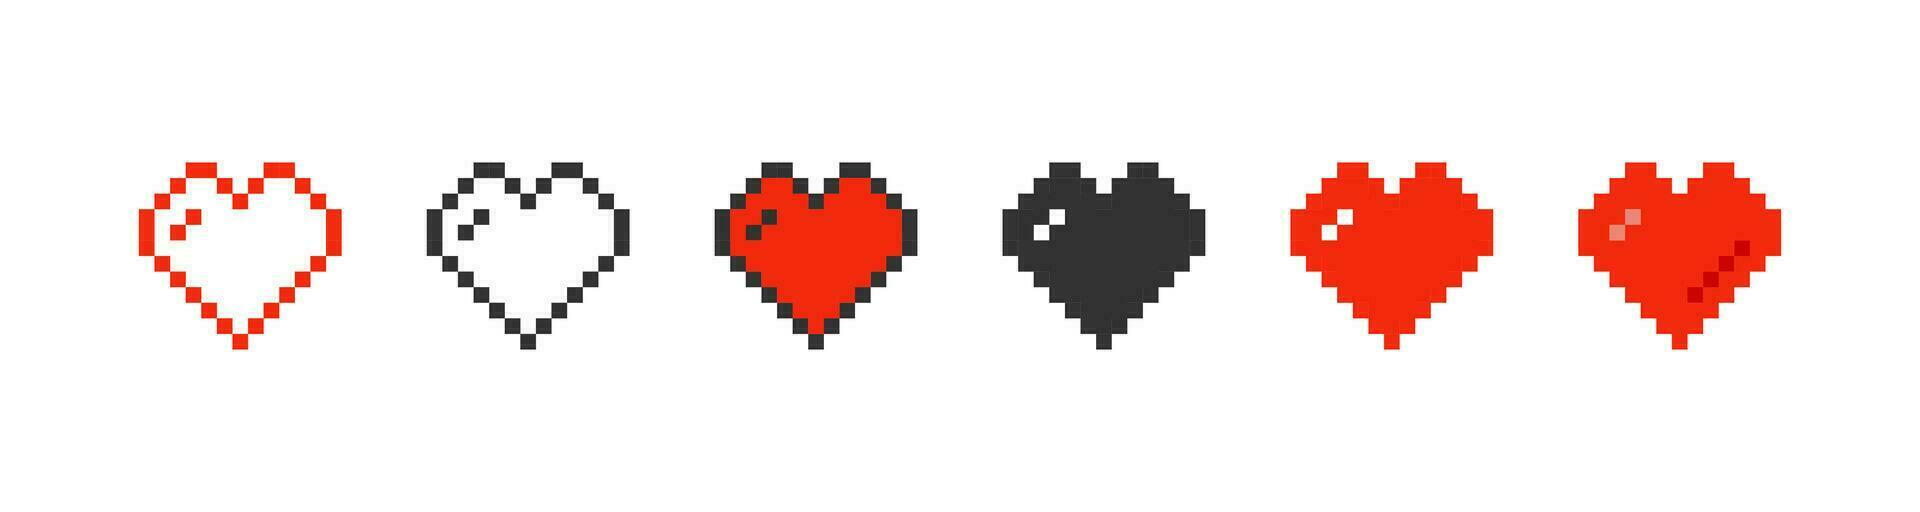 pixelado corazón en diferente estilos icono colocar. píxel juego vida símbolo. linda S t San Valentín día rojo corazón, juego elemento. contorno plano y de colores estilo. vector ilustración.